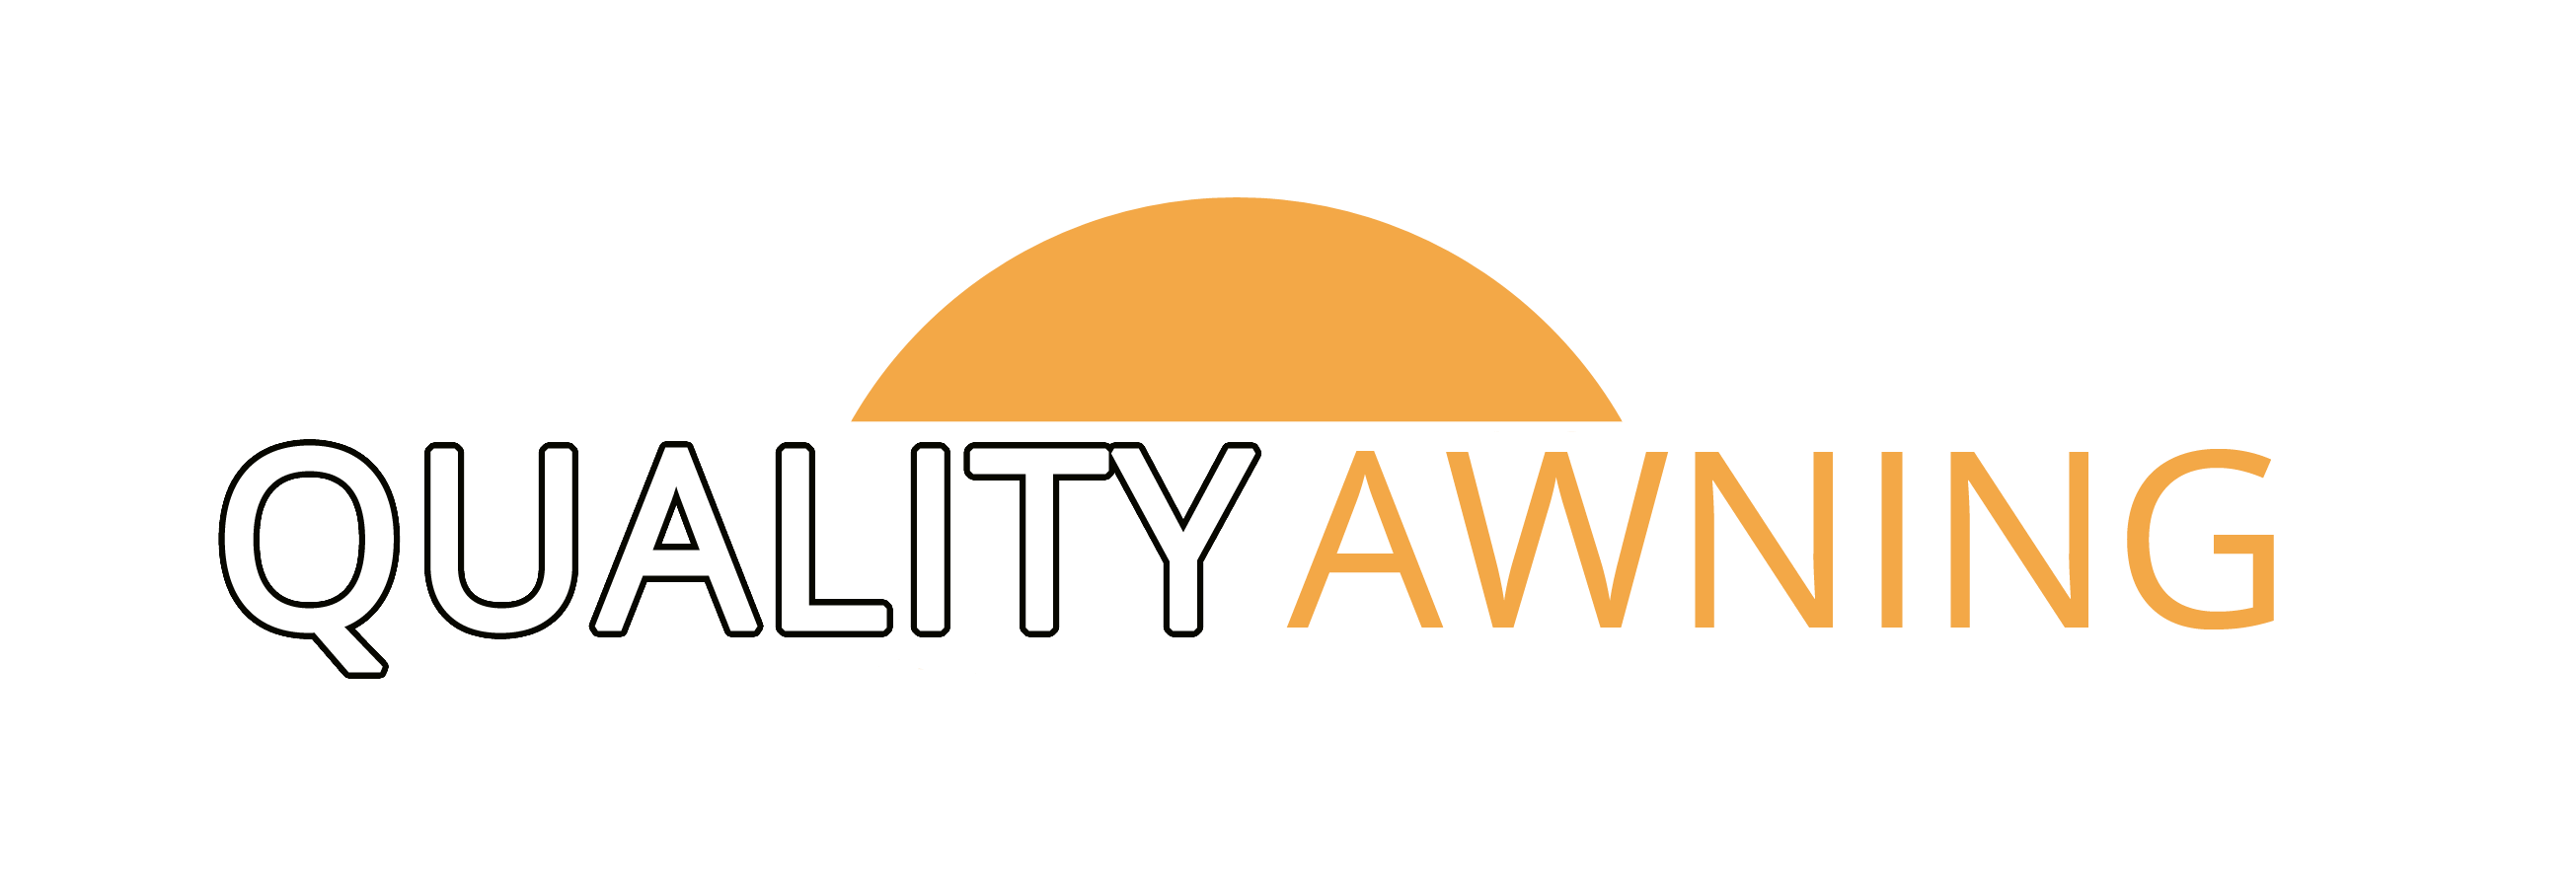 quality awning logo